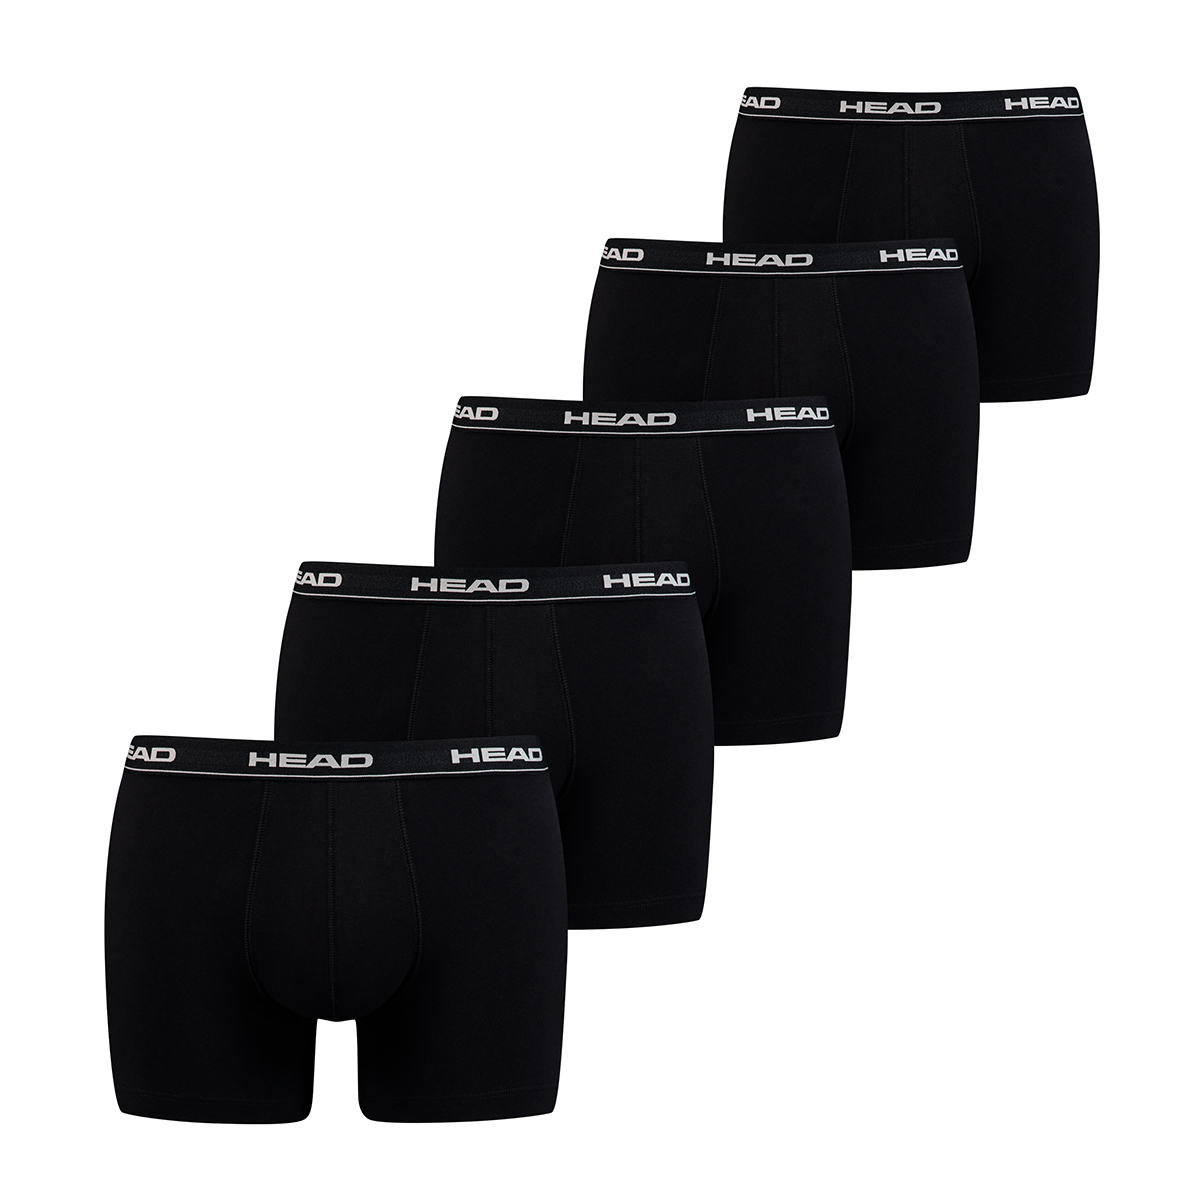 HEAD Mens Men’s Basic Boxers (5 Pack) Boxer Shorts, Black, XL (5er Pack)